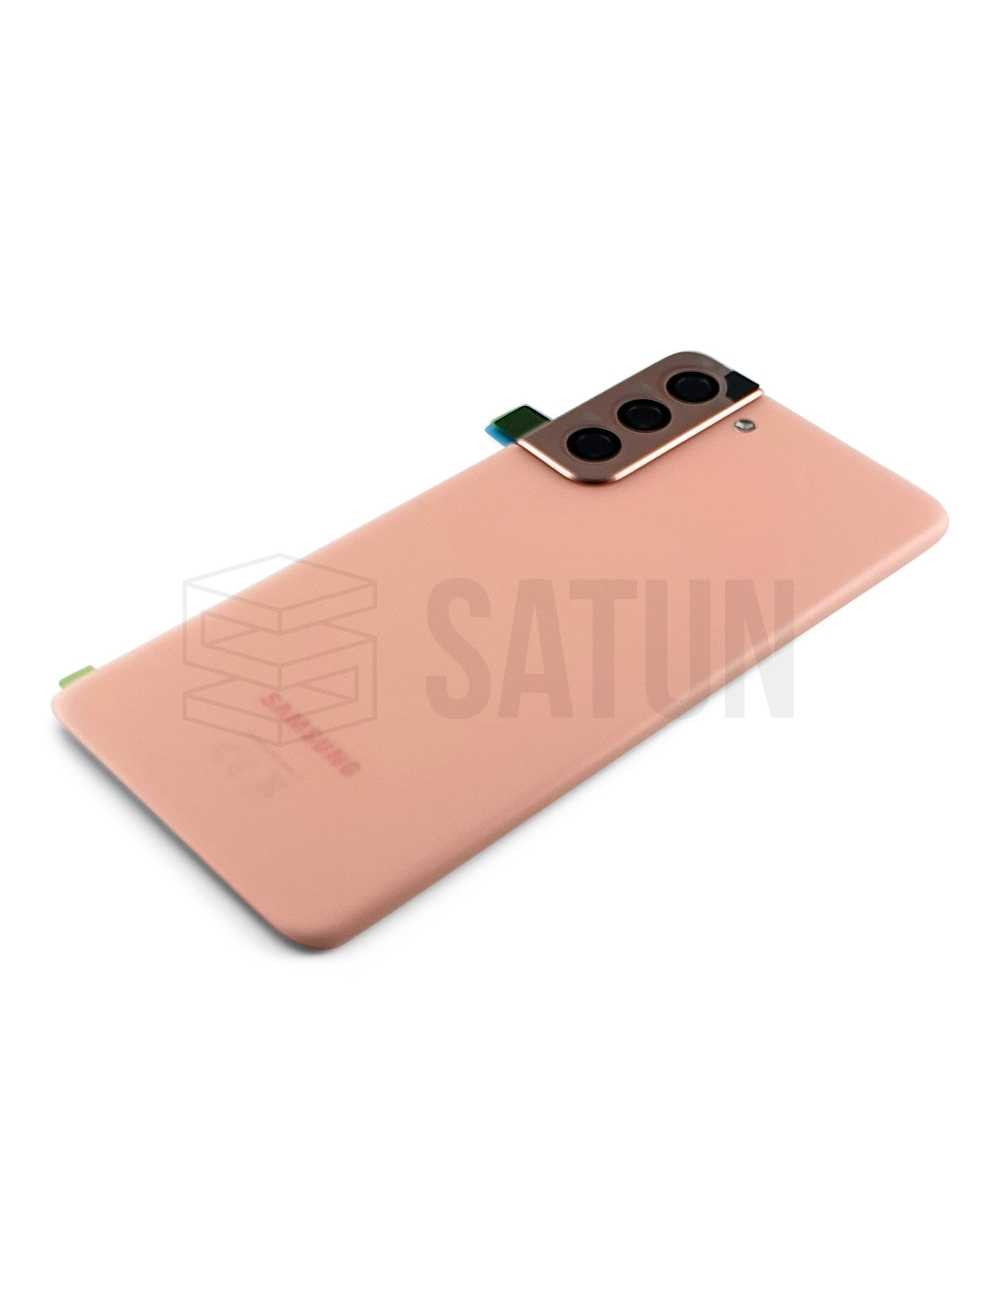 GH82-24519D - Tapa de batería Samsung Galaxy S21 5G rosa